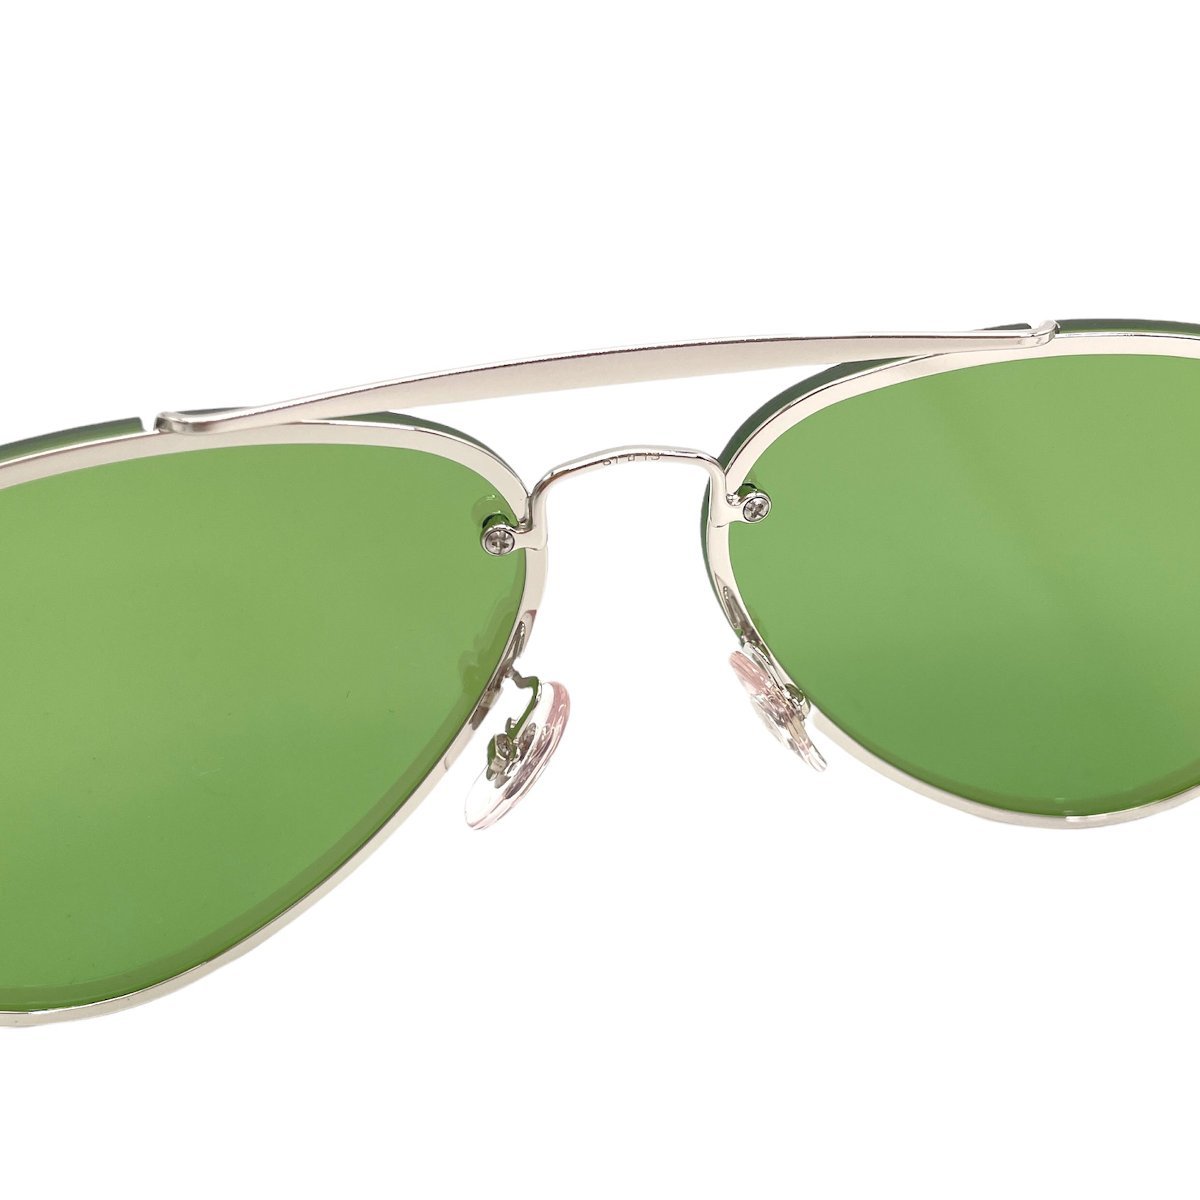 # 1 иен ~ прекрасный товар # Ray Ban RayBan # солнцезащитные очки Blaze авиатор RB3584N 9051/30 # серебряный темно-зеленый зеркало линзы очки 